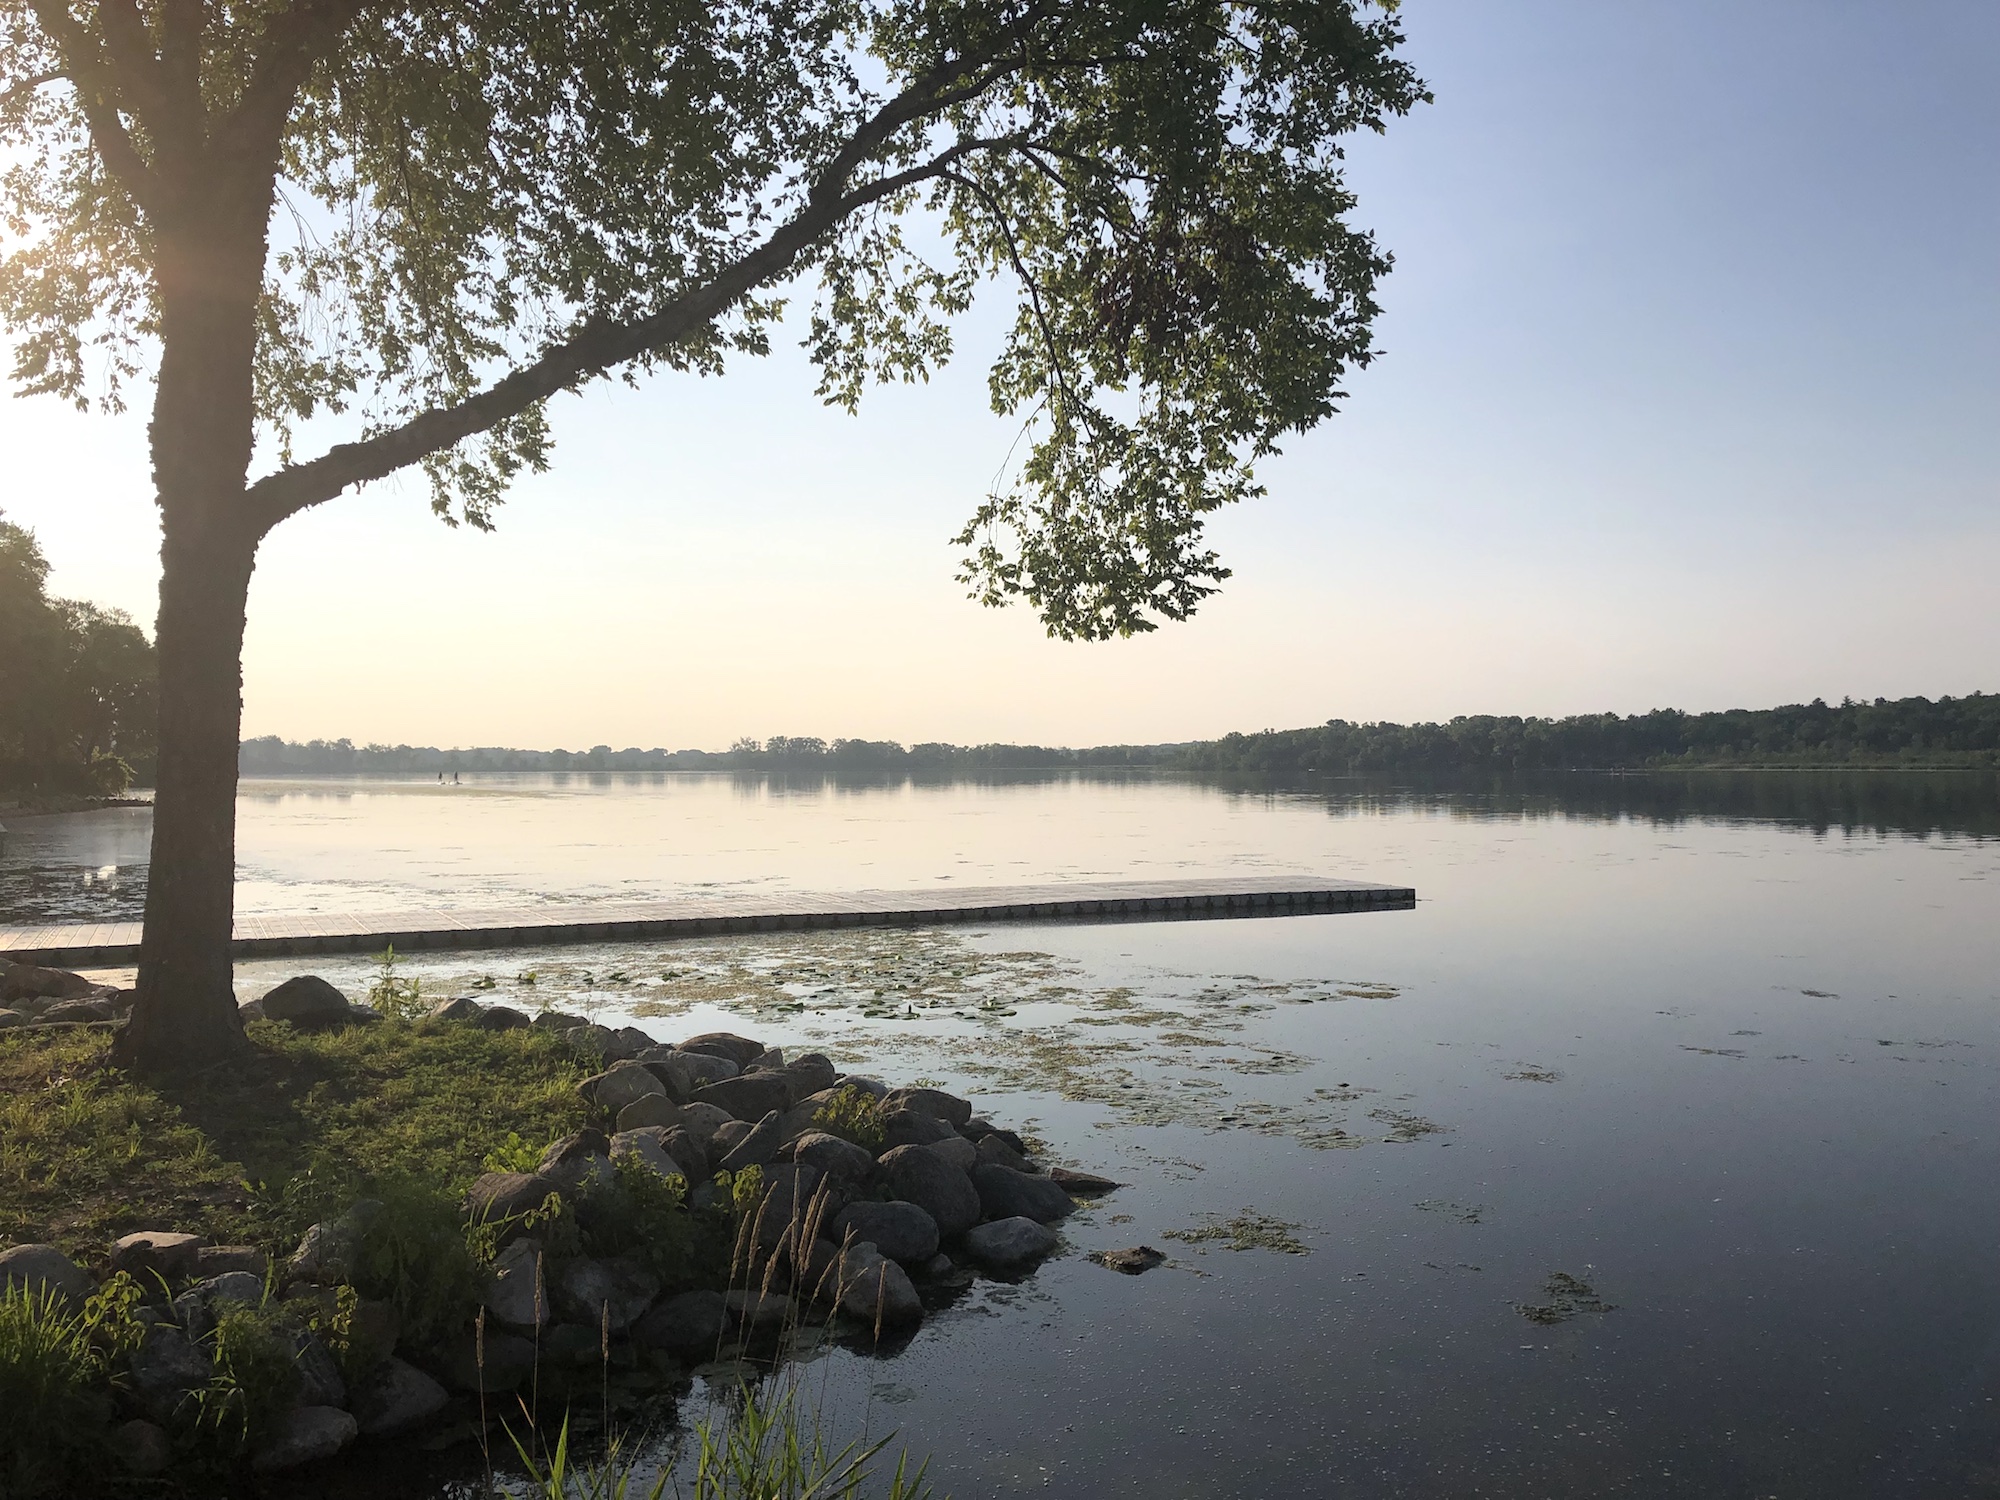 Lake Wingra on July 9, 2019.